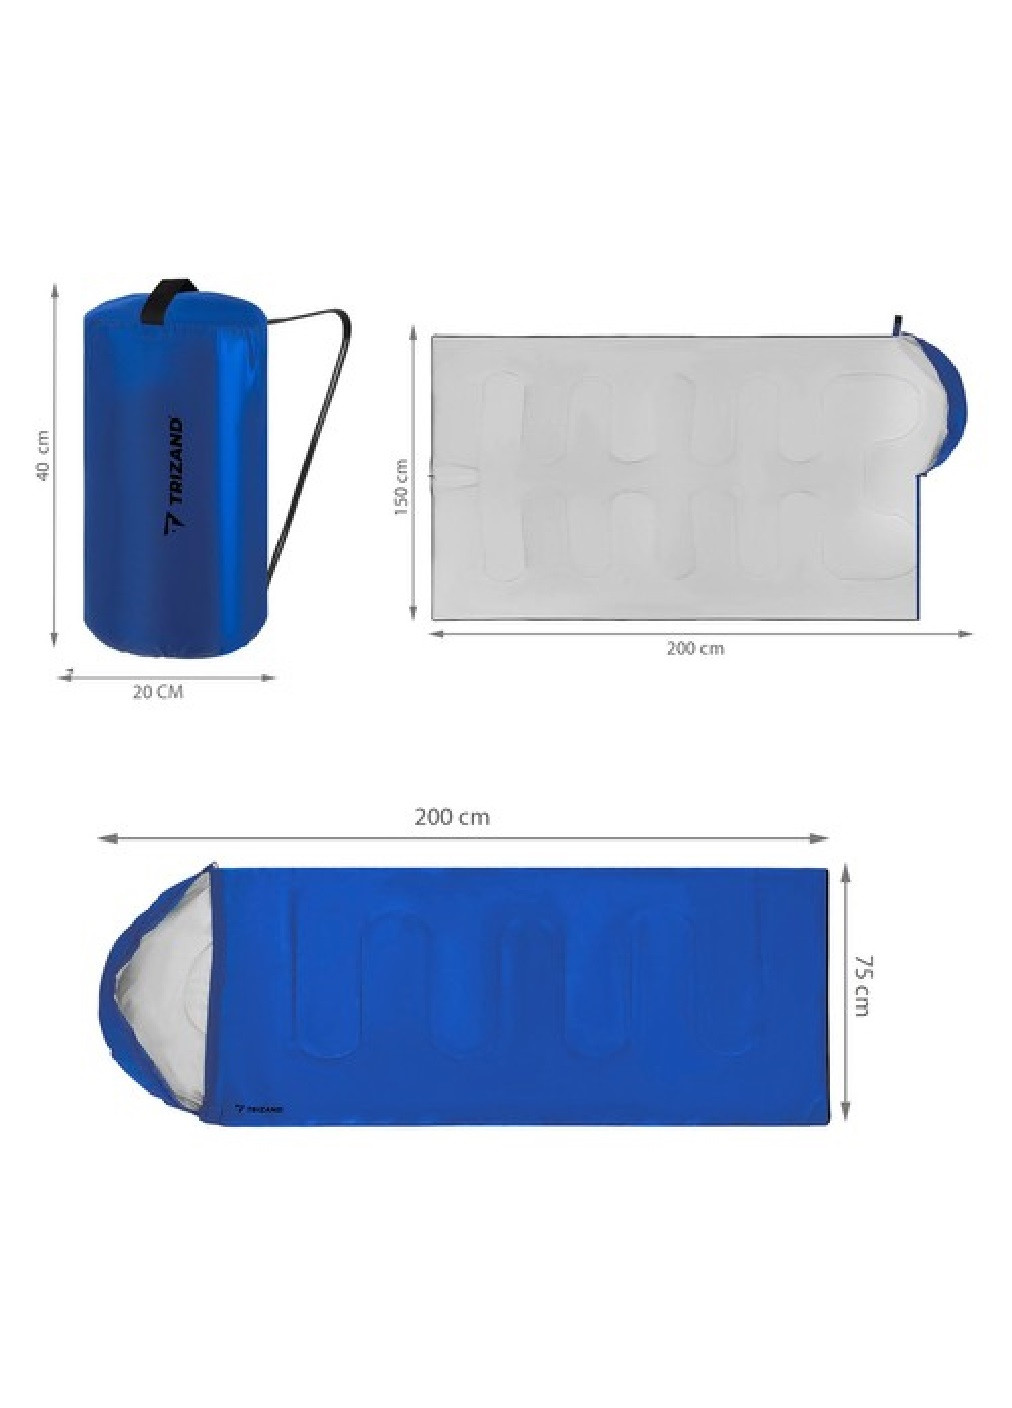 Спальный мешок спальник одеяло плед туристический походный водонепроницаемый с капюшоном 200х150 см (474875-Prob) Синий Unbranded (260072260)